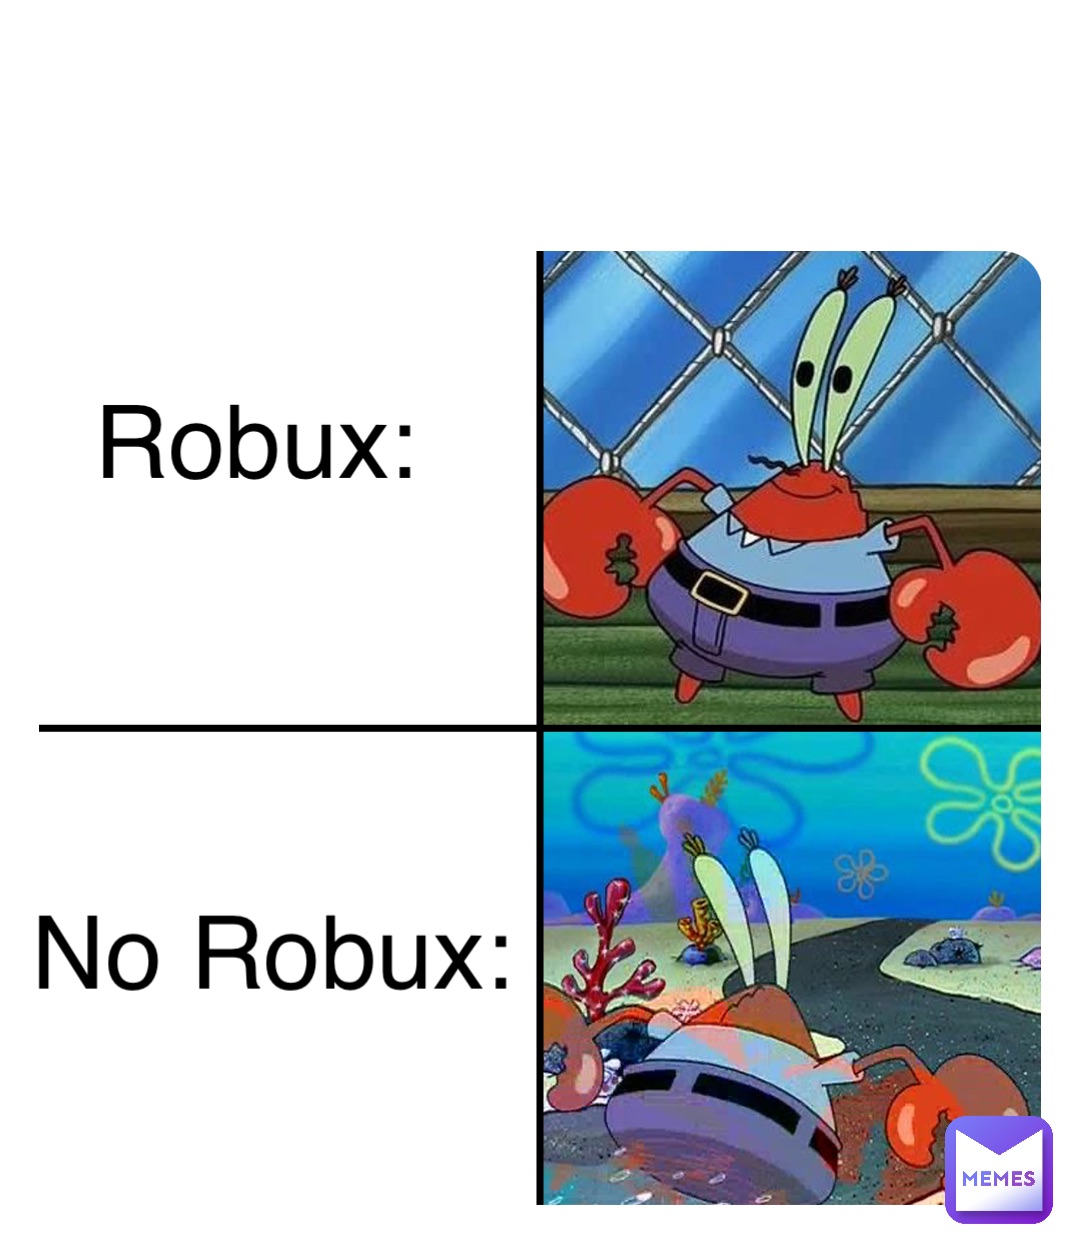 No Robux: Robux: